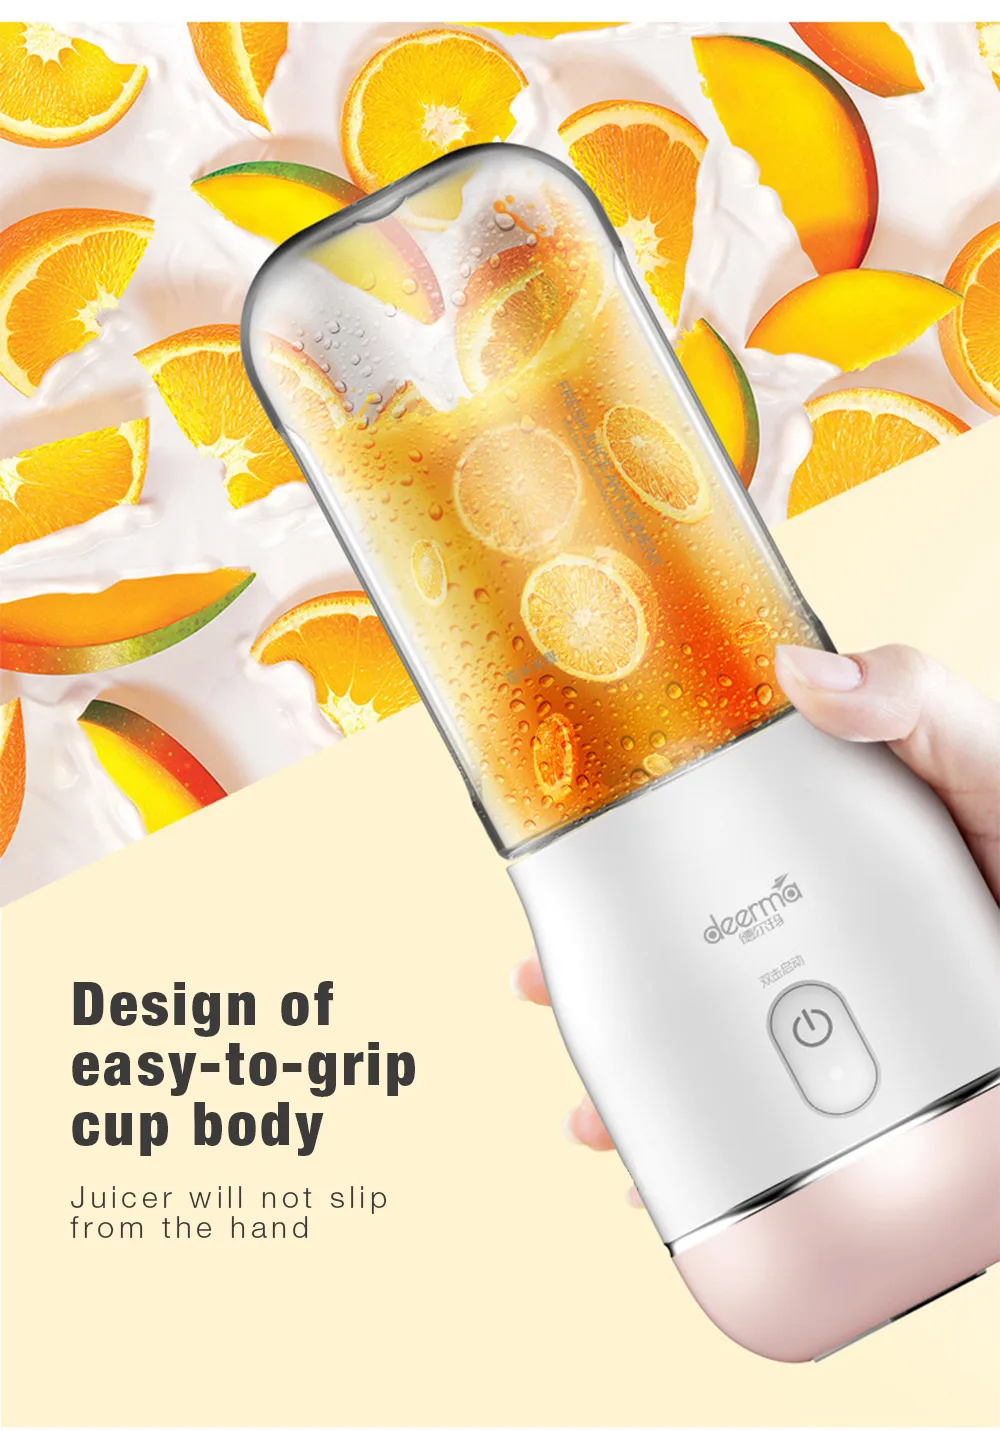 Deerma 400 мл мини Портативный электрическая соковыжималка блендер сока чашка Беспроводной USB аккумуляторная для фруктов и овощей, резка, миксер